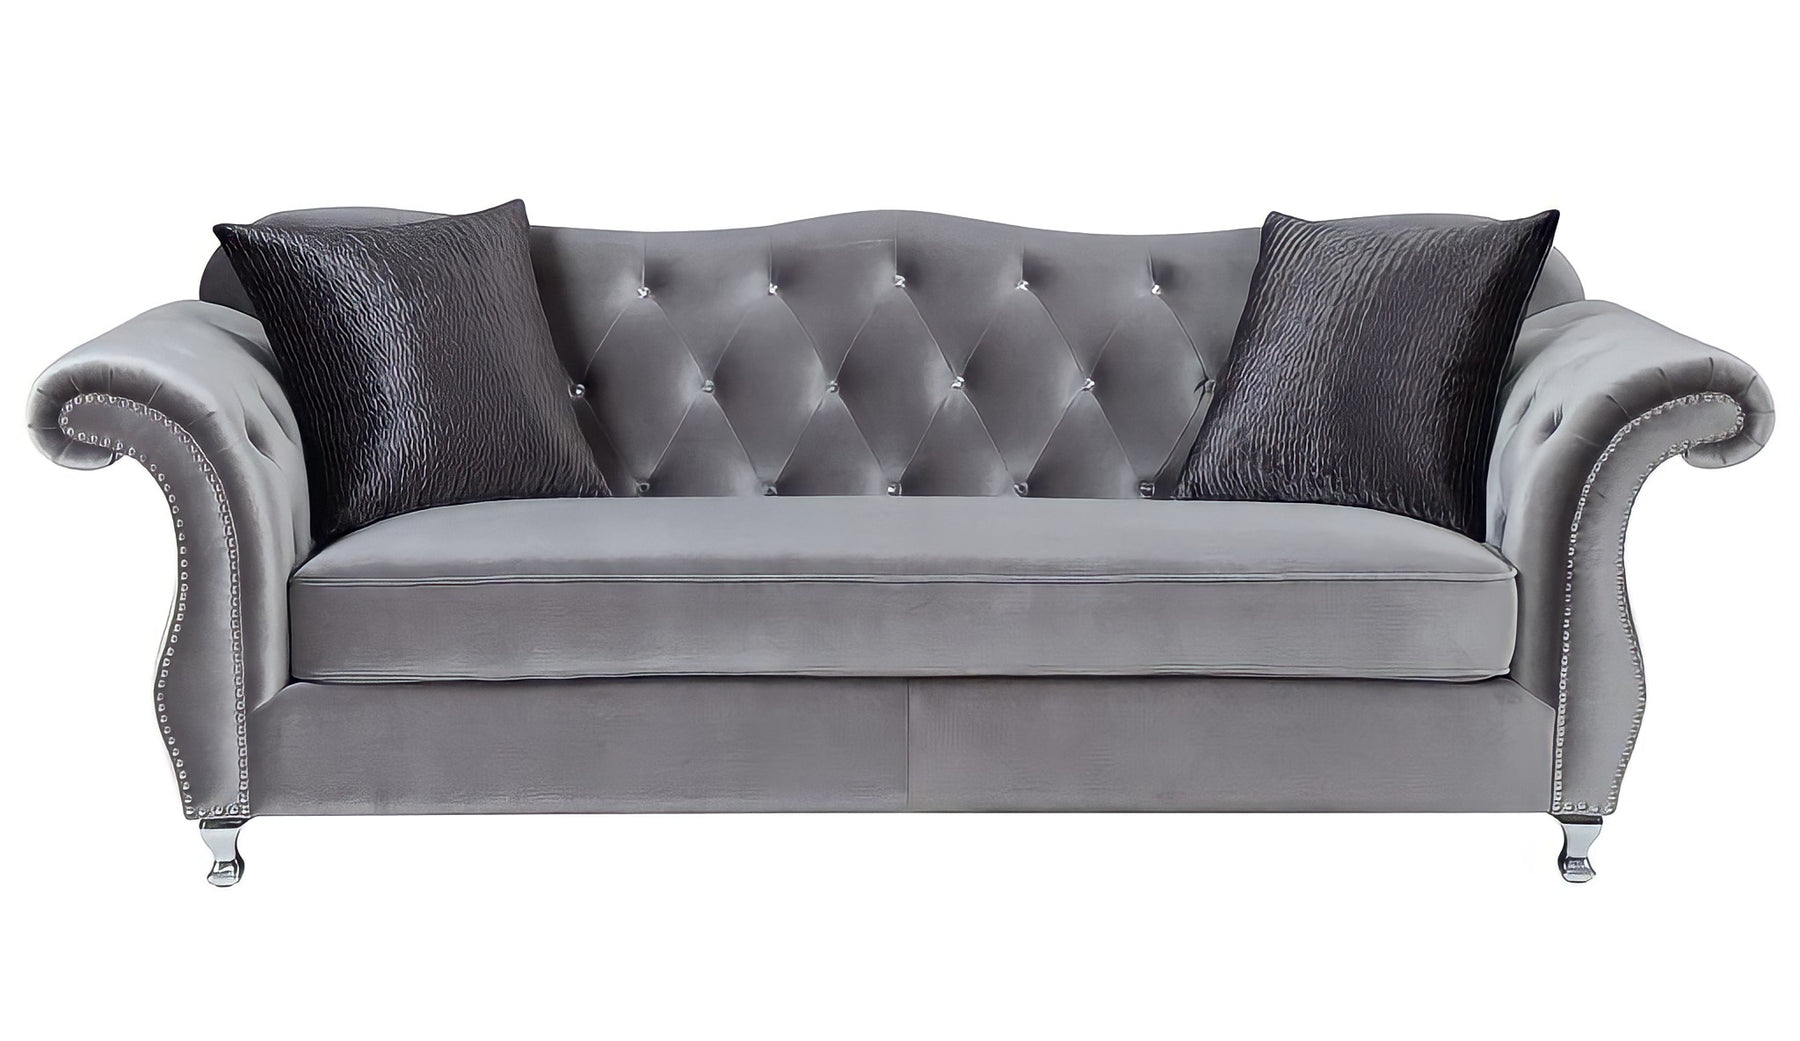 The New Chesterfield Sofas Sets in Luxury Grey Velvet – LISF LTD.